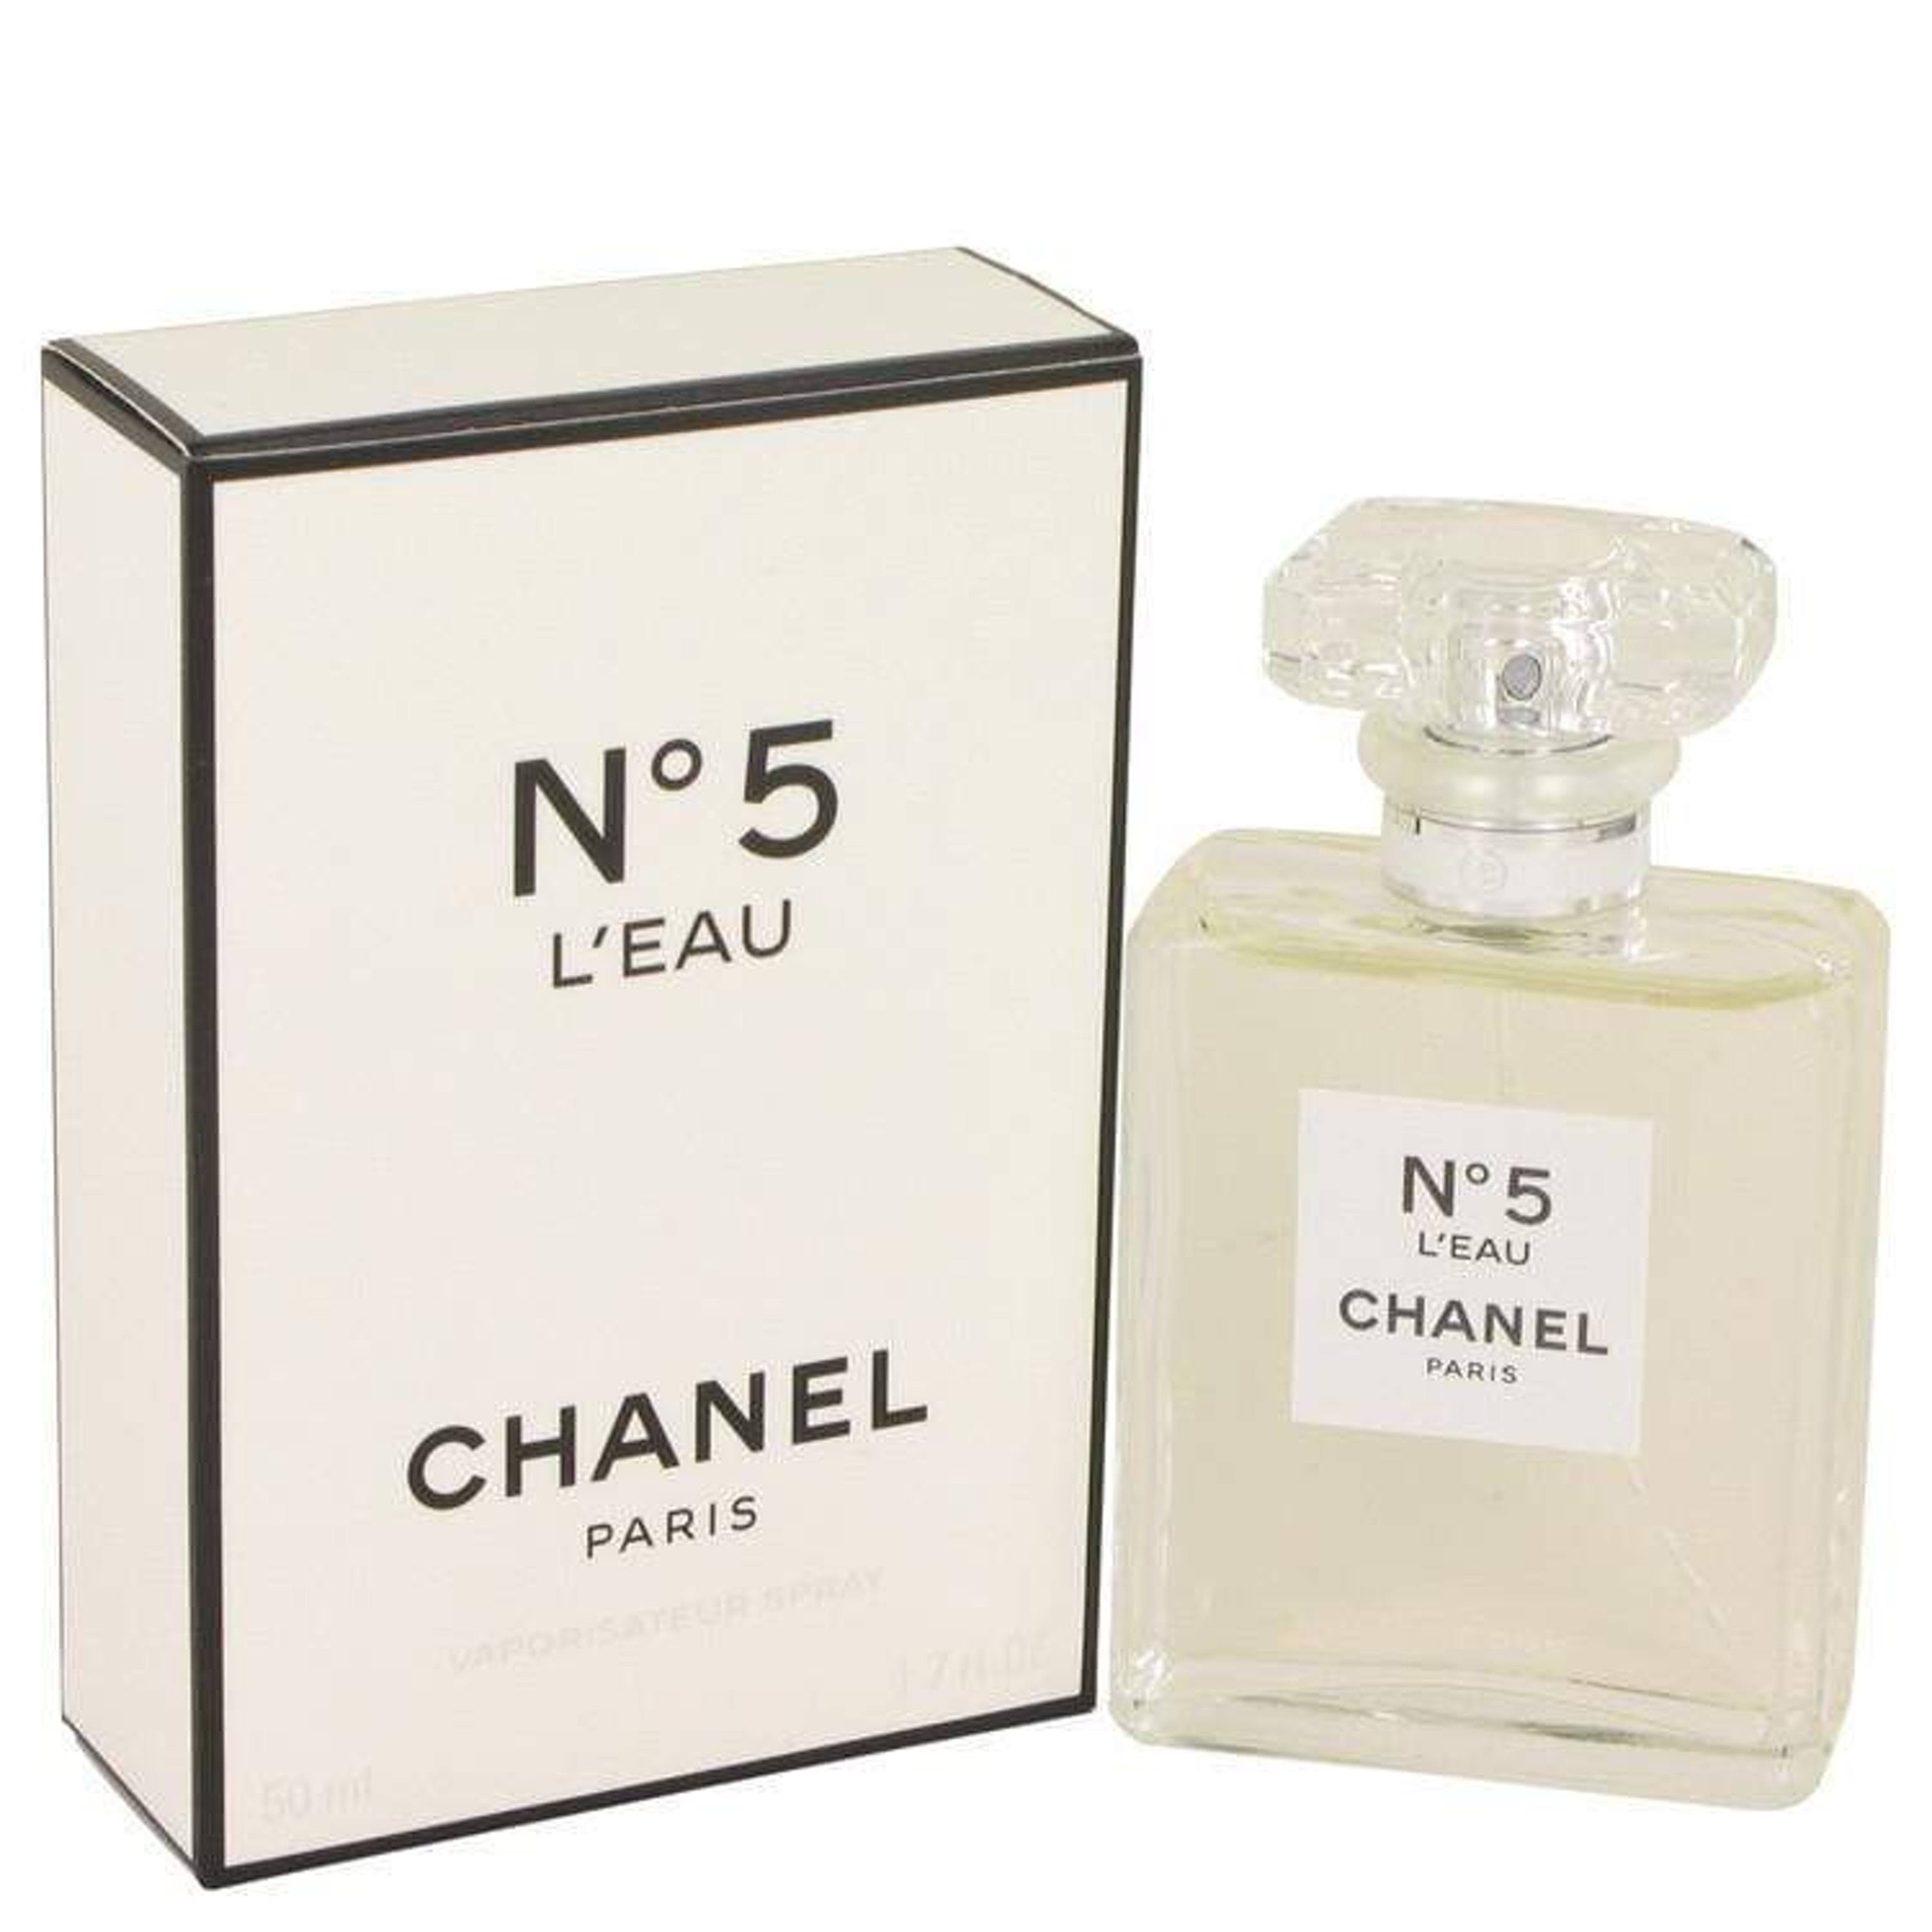 Chanel N5 Deodorant Spray